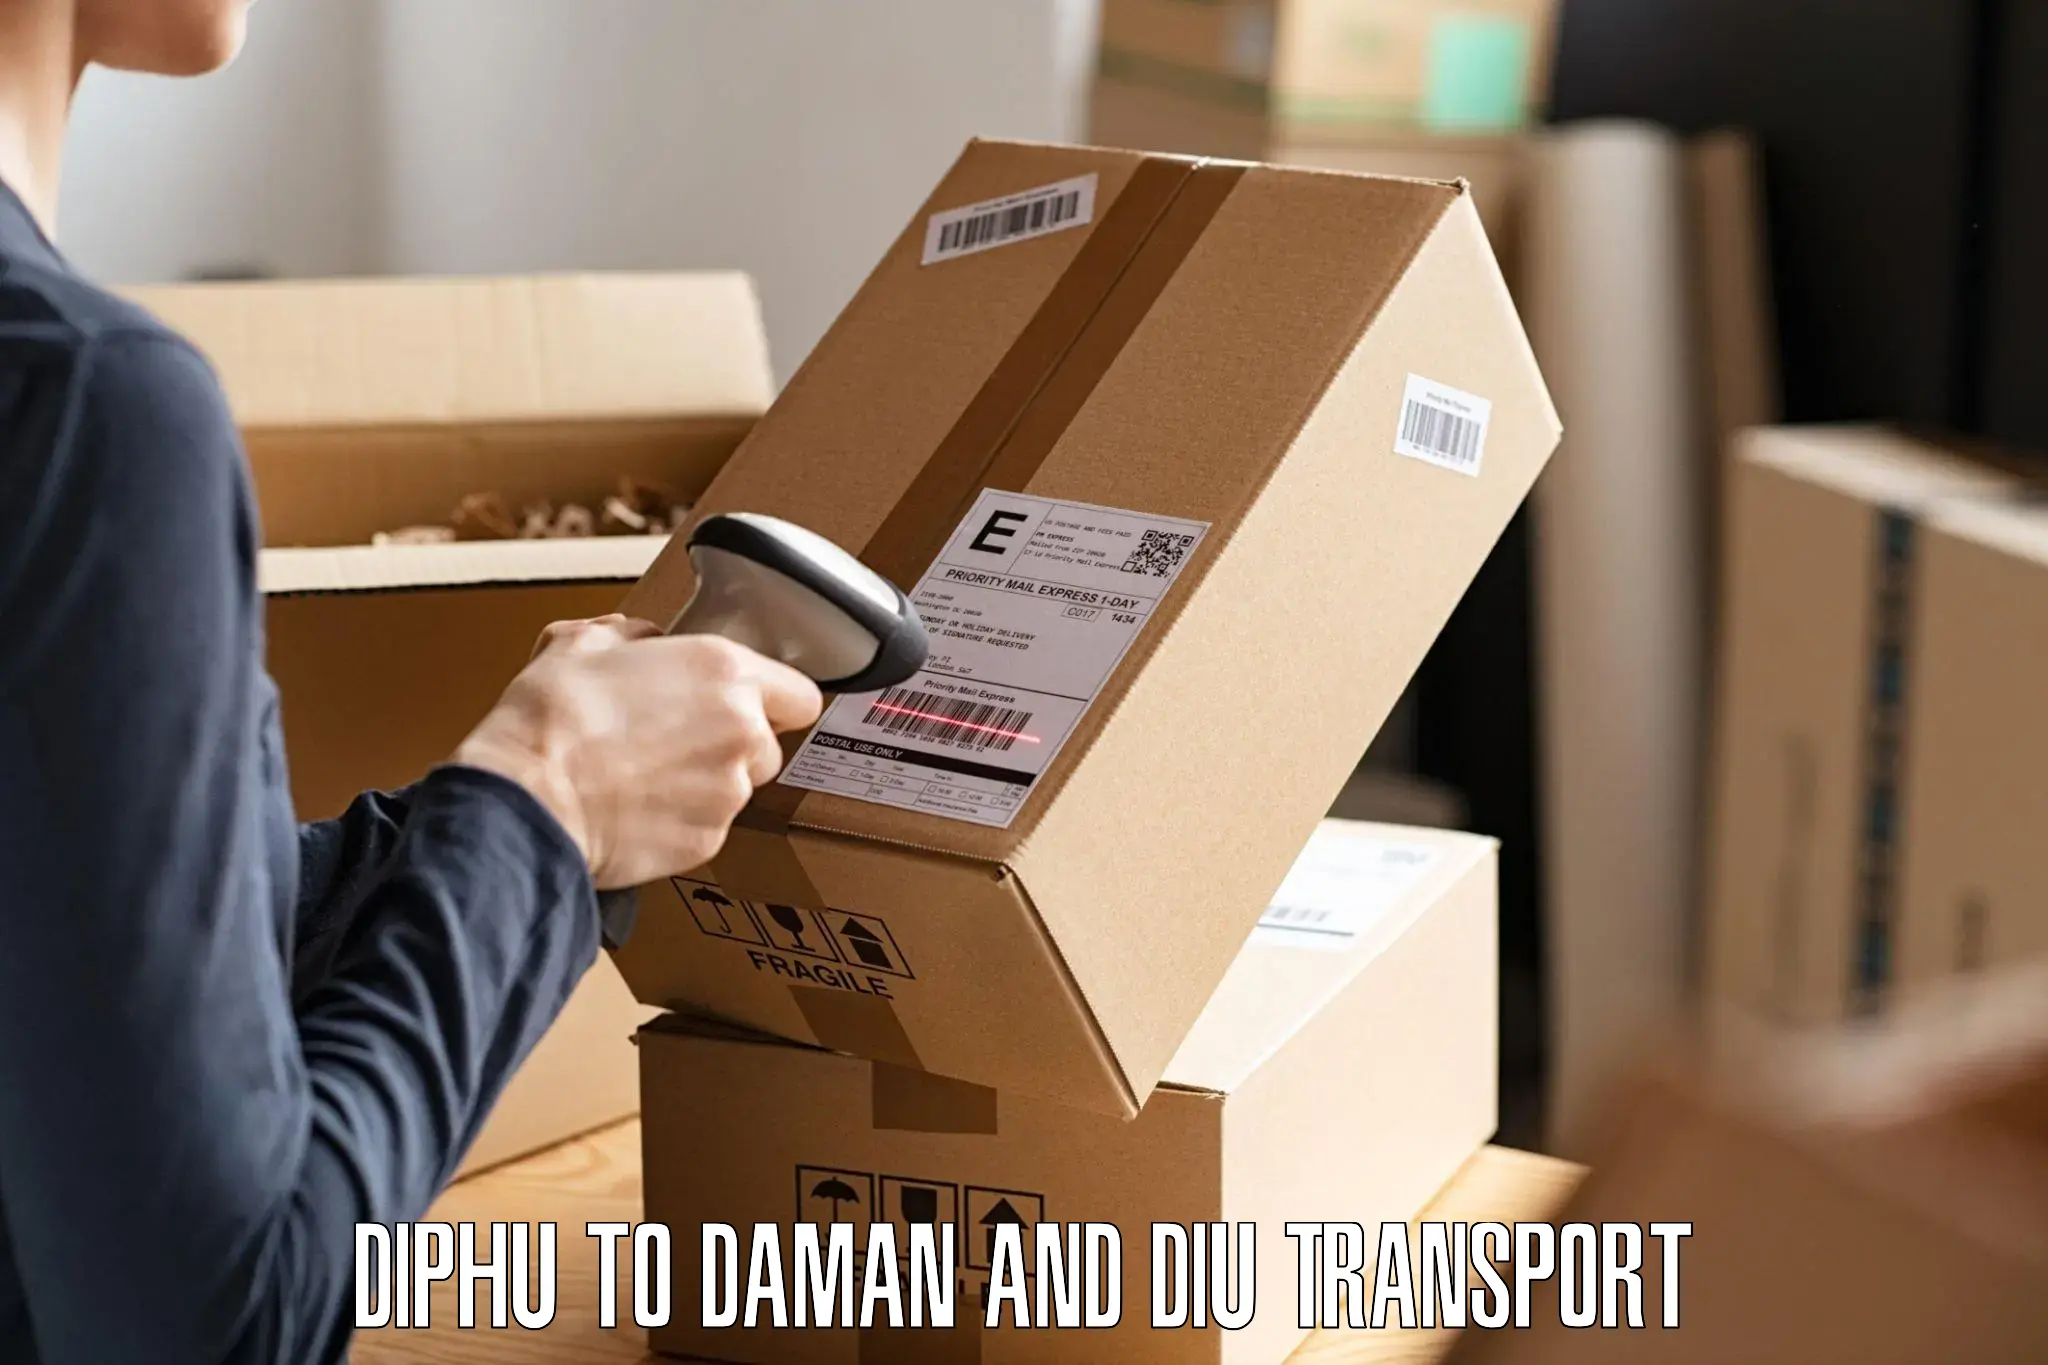 Bike shipping service Diphu to Daman and Diu